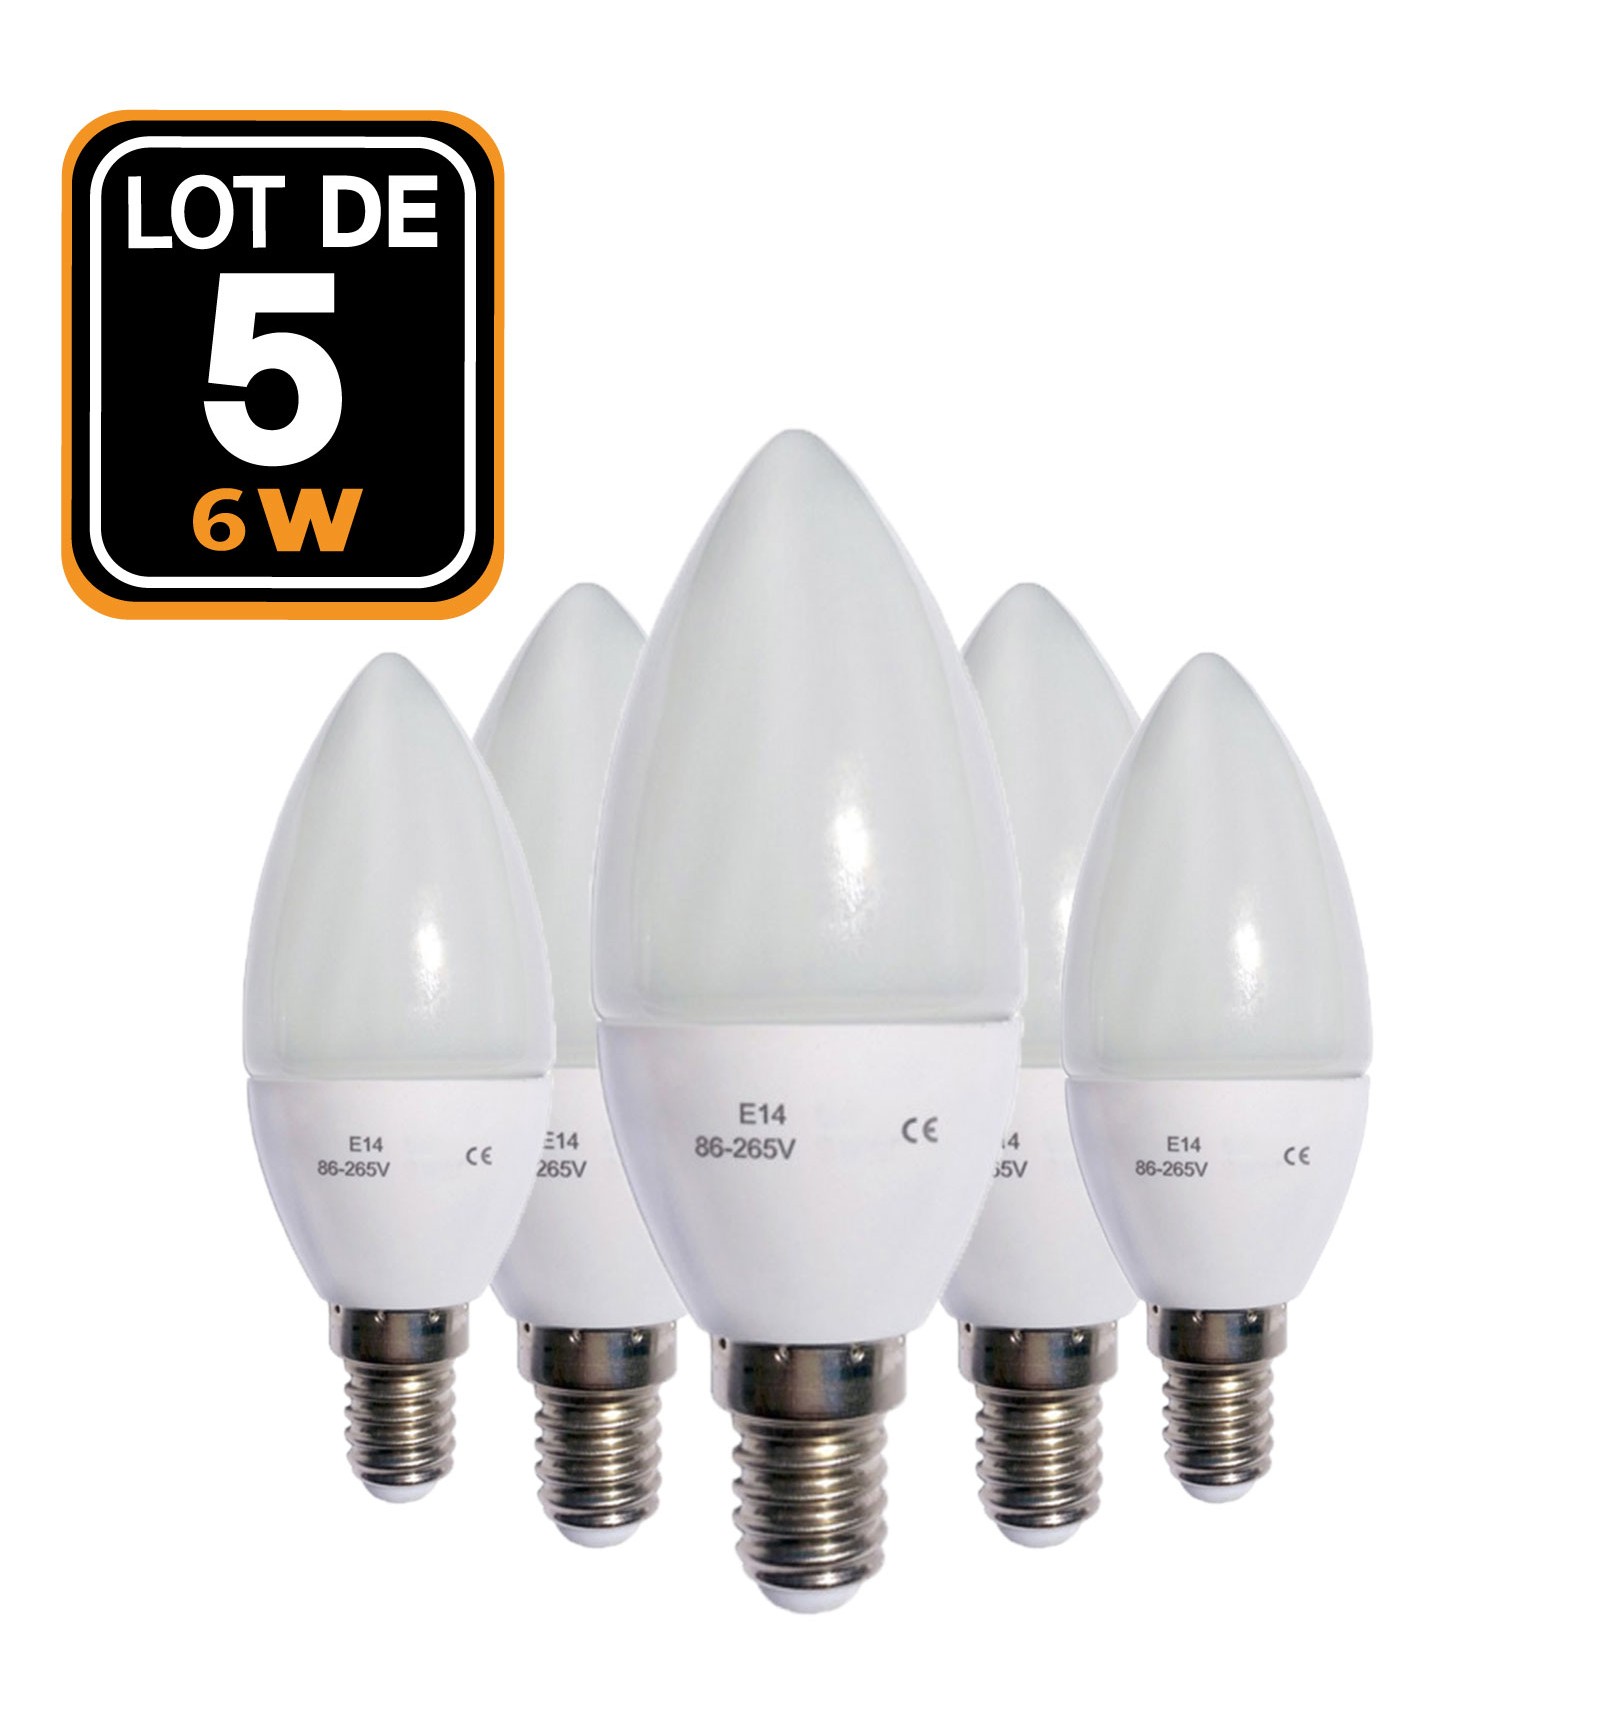 Lot de 5 ampoules LED flamme E14 6W 220V 4500k DIMMABLE